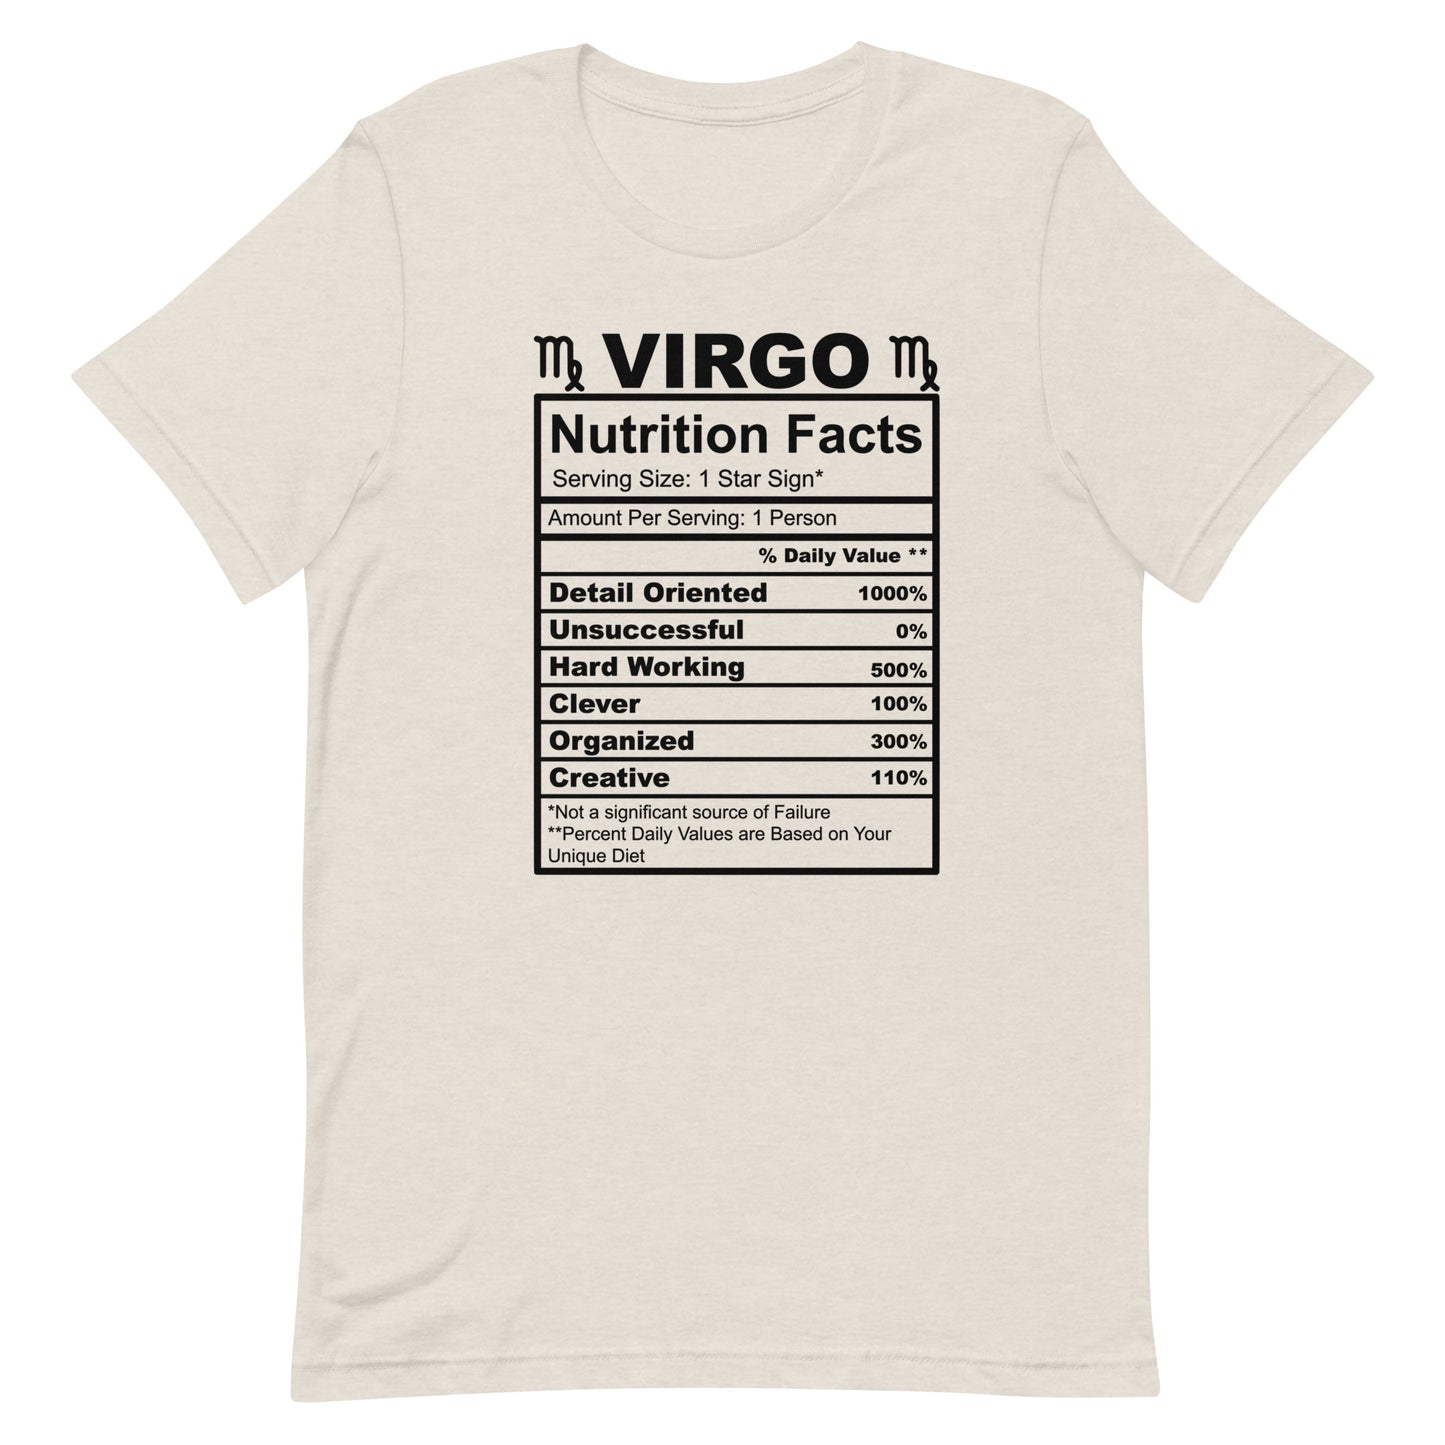 VIRGO - L-XL - Unisex T-Shirt (black letters)